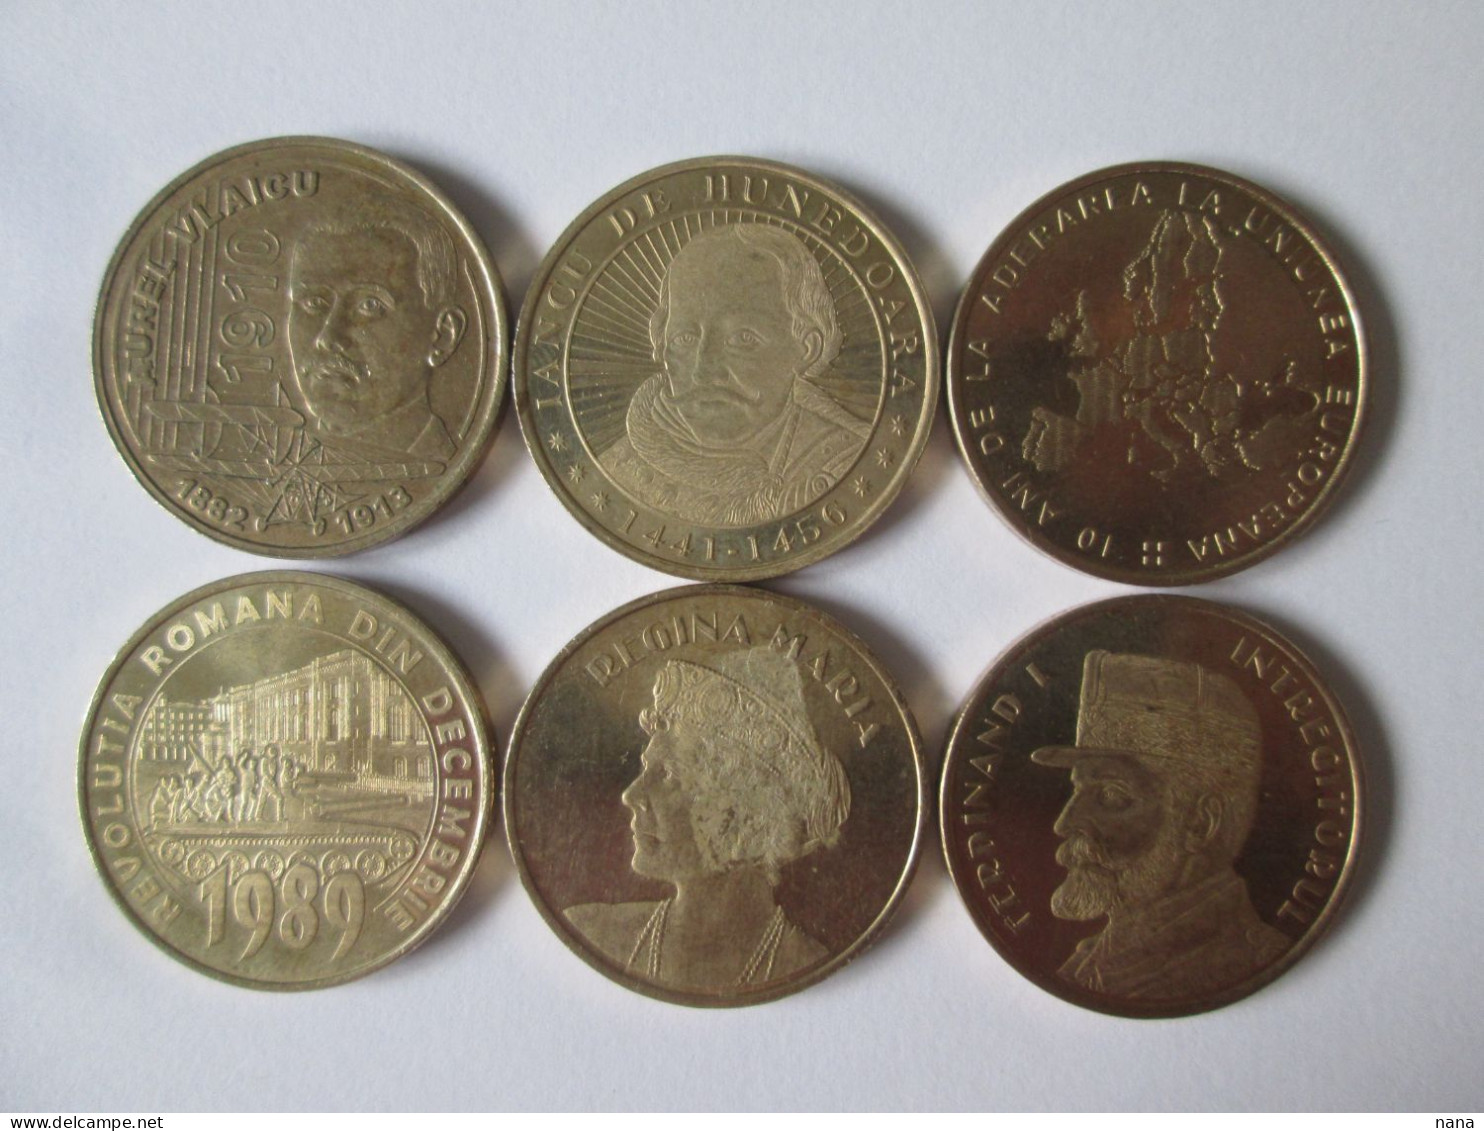 Roumanie Lot De 6 Pieces Commem.differentes 50 Bani /Romania Set Of 6 Different Commemorative Coins 50 Bani - Roumanie